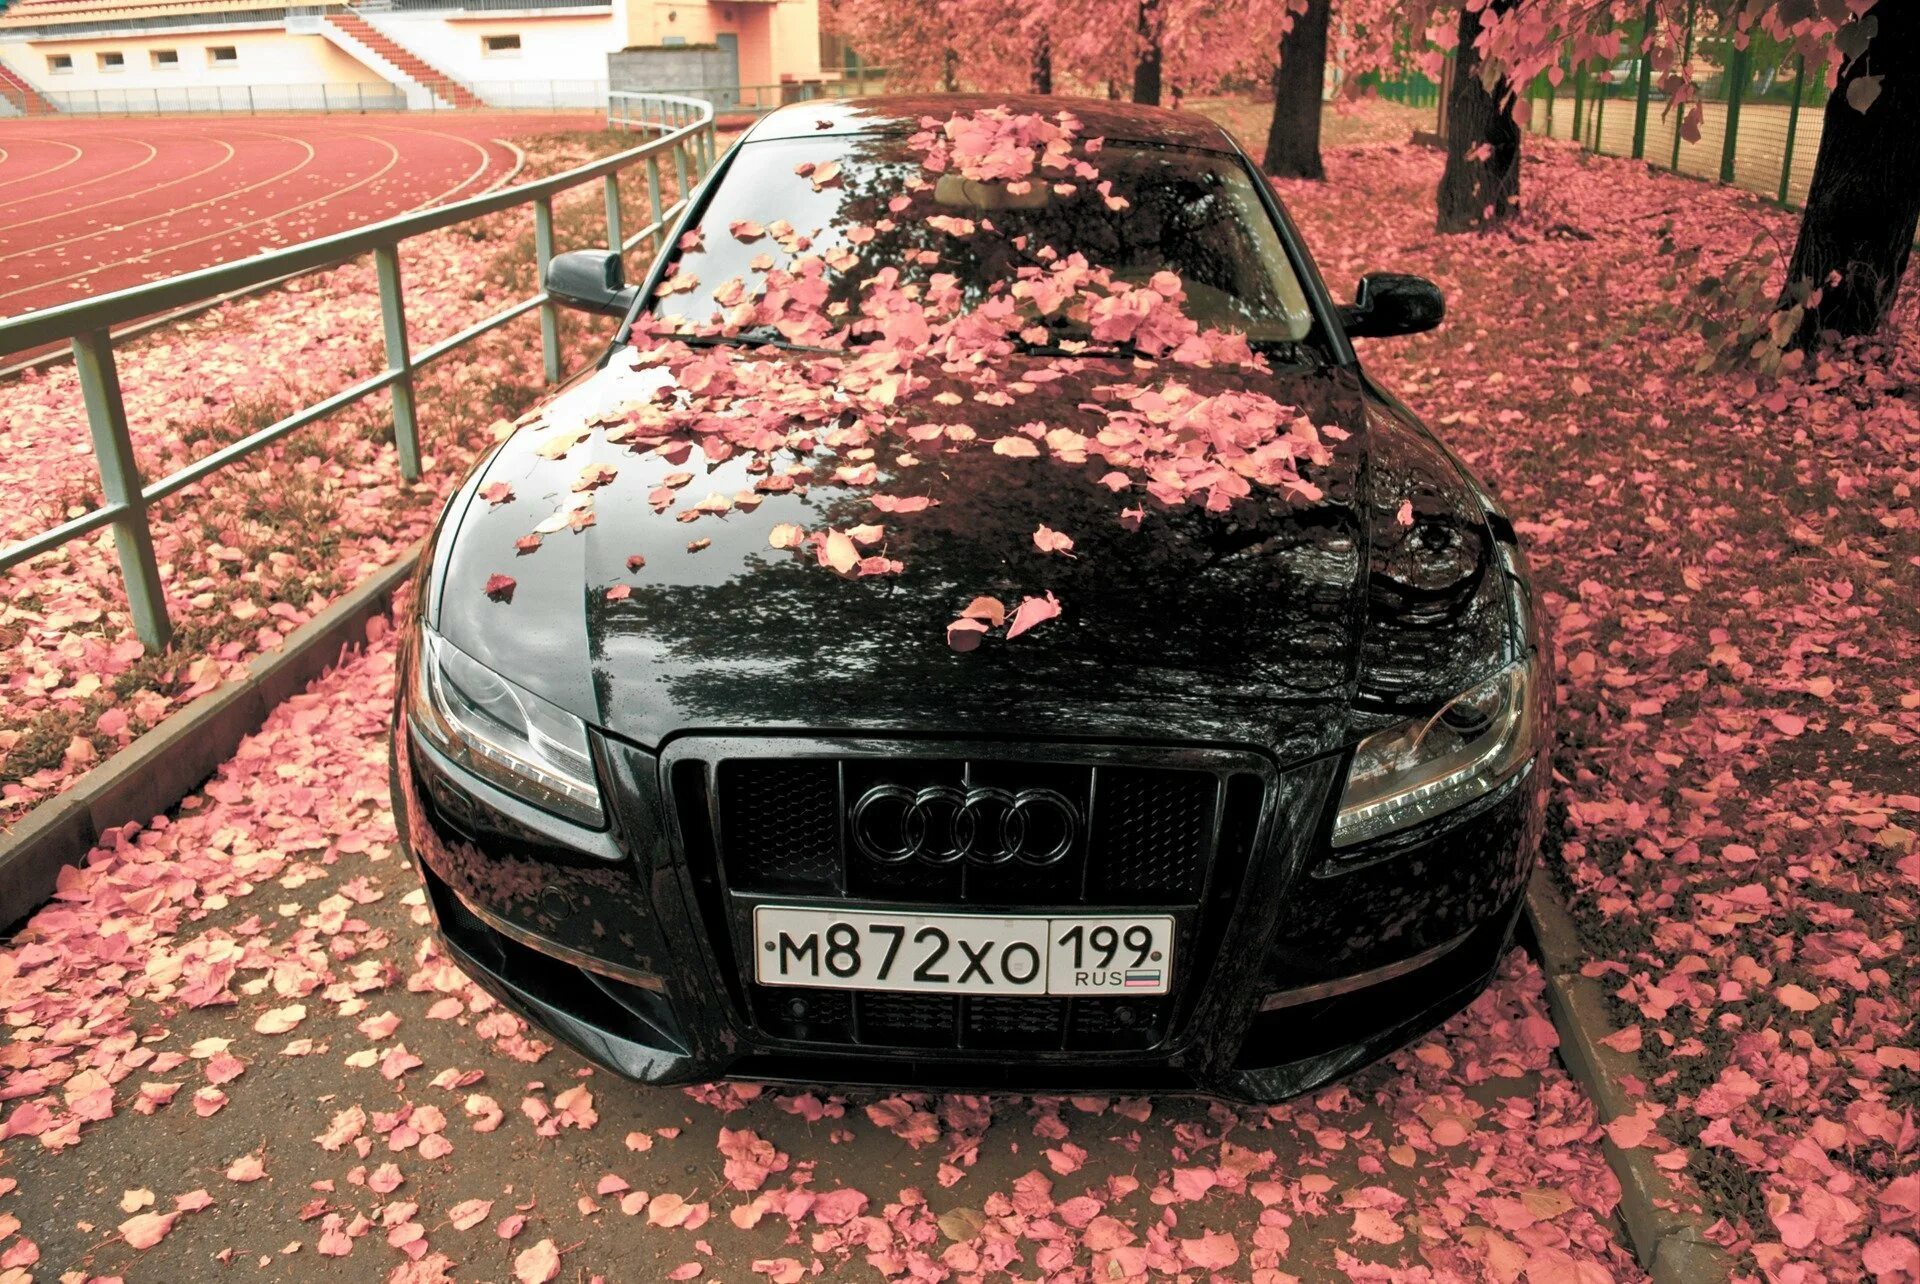 Капот в лесу. Машина с цветами. Розы в машине. Цветы на капоте машины. Черная машина с цветами.